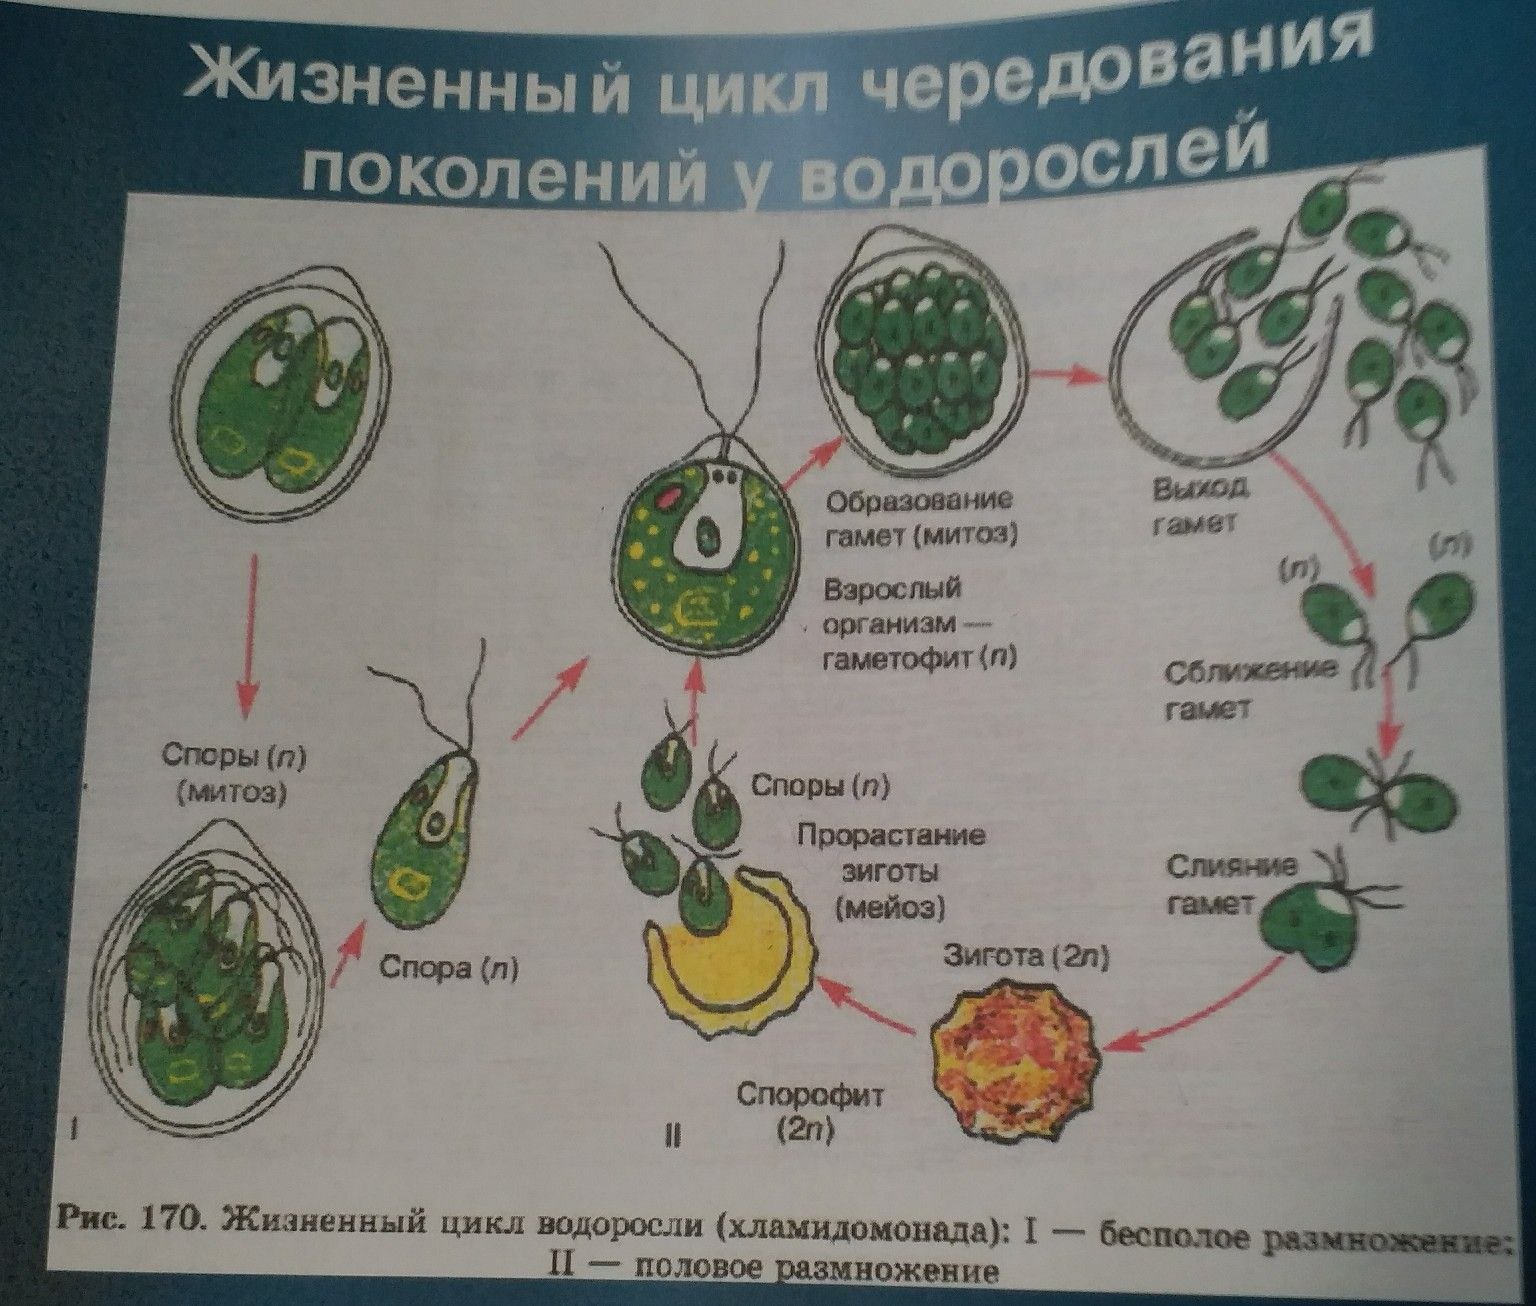 Схема жизненного цикла растения гаметы